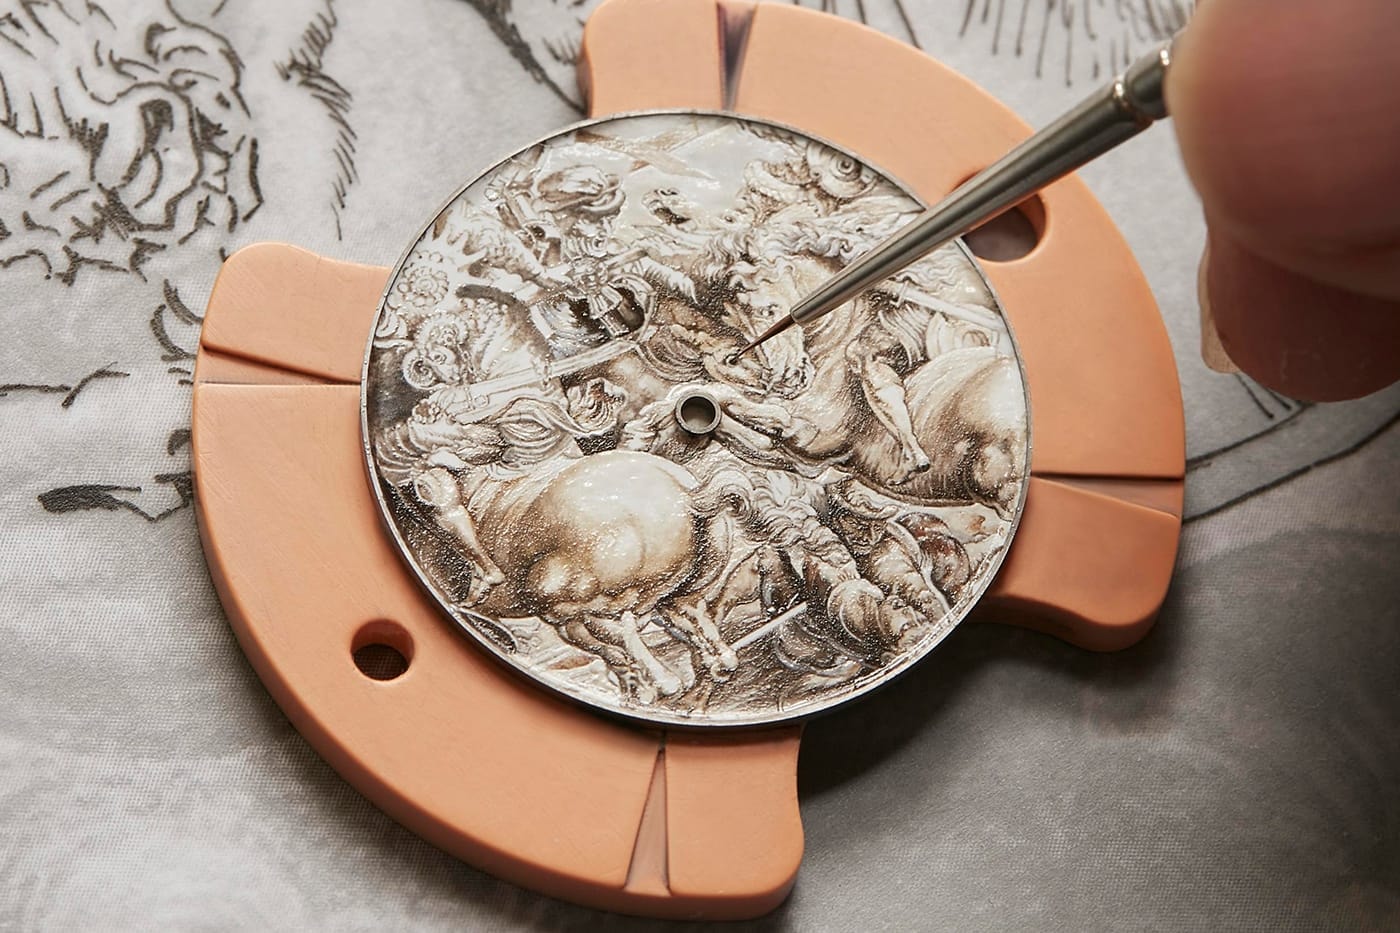 루브르 박물관 x 바쉐론 콘스탄틴 시계가 공개됐다